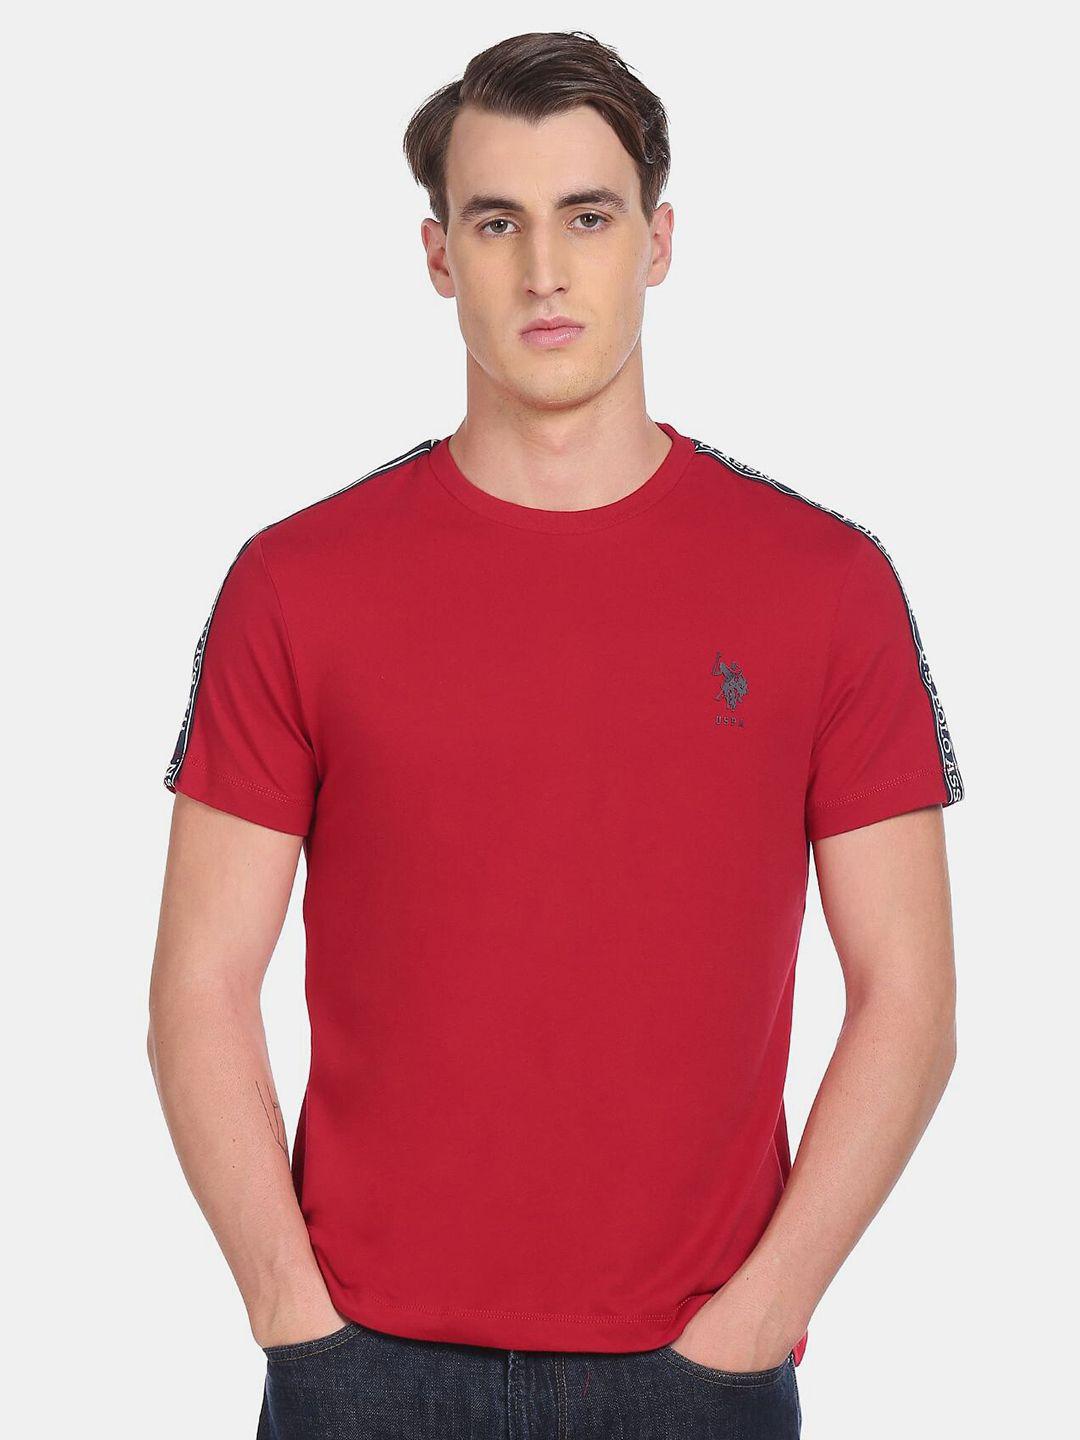 u s polo assn men red solid t-shirt